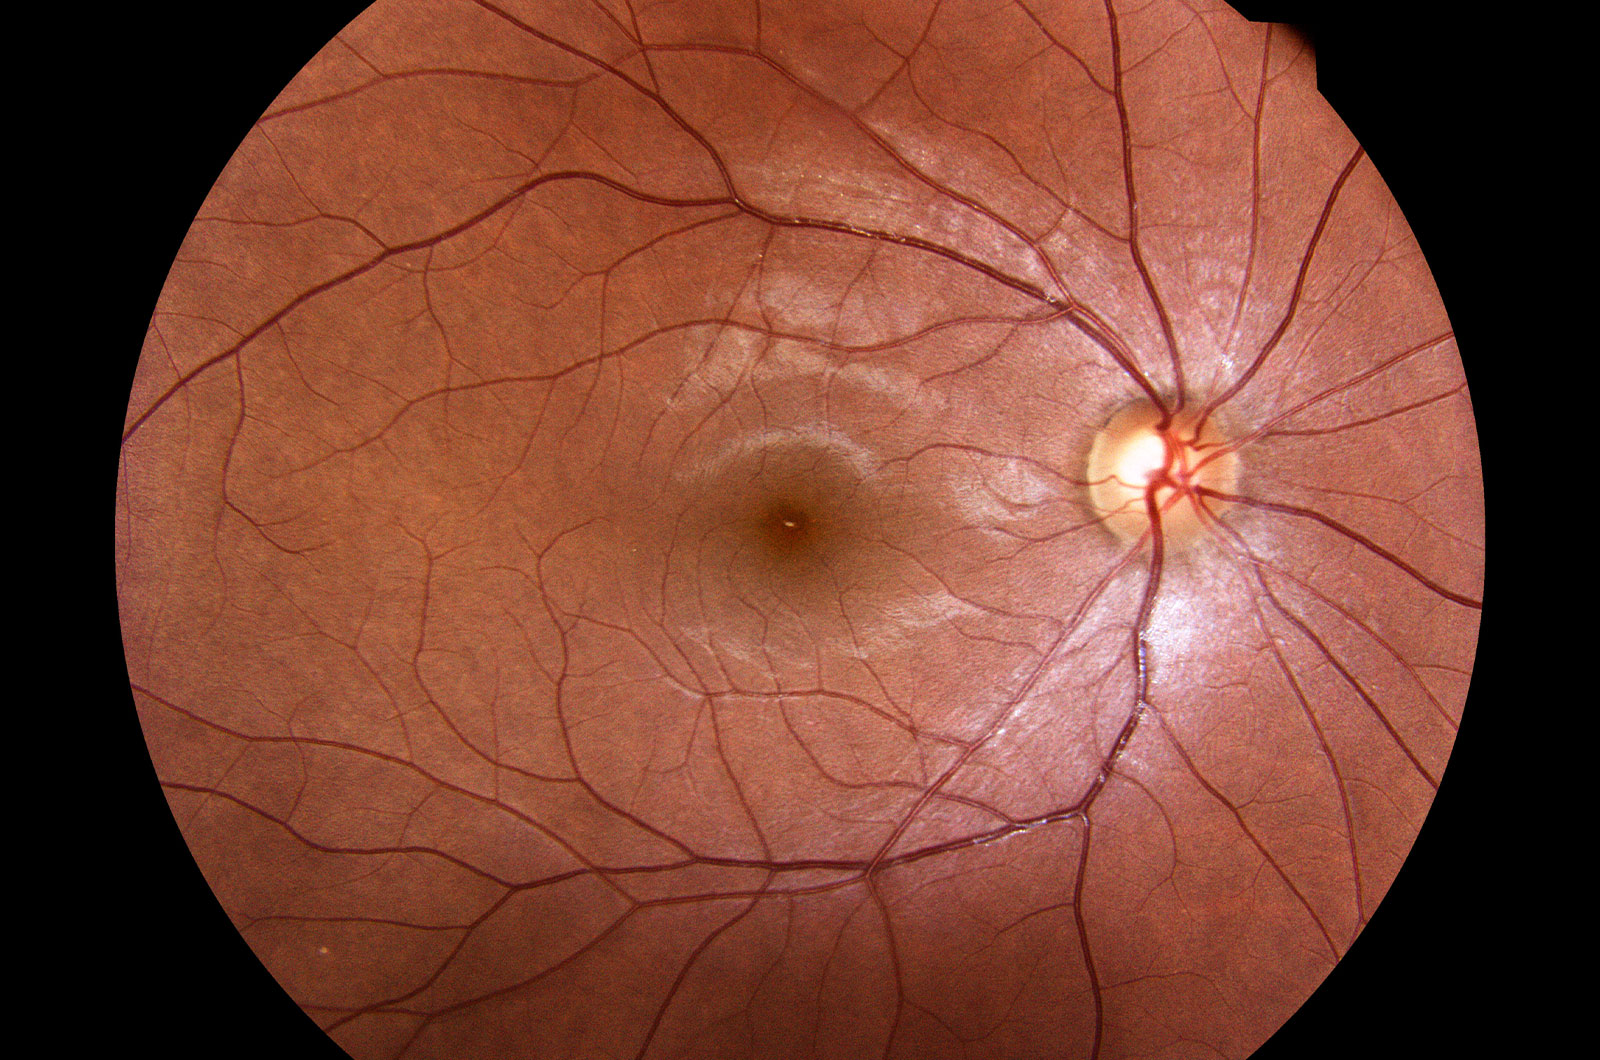 Medizinisches Foto einer abnormalen Retina des menschlichen Auges, Netzhautuntersuchung bei Diabetes